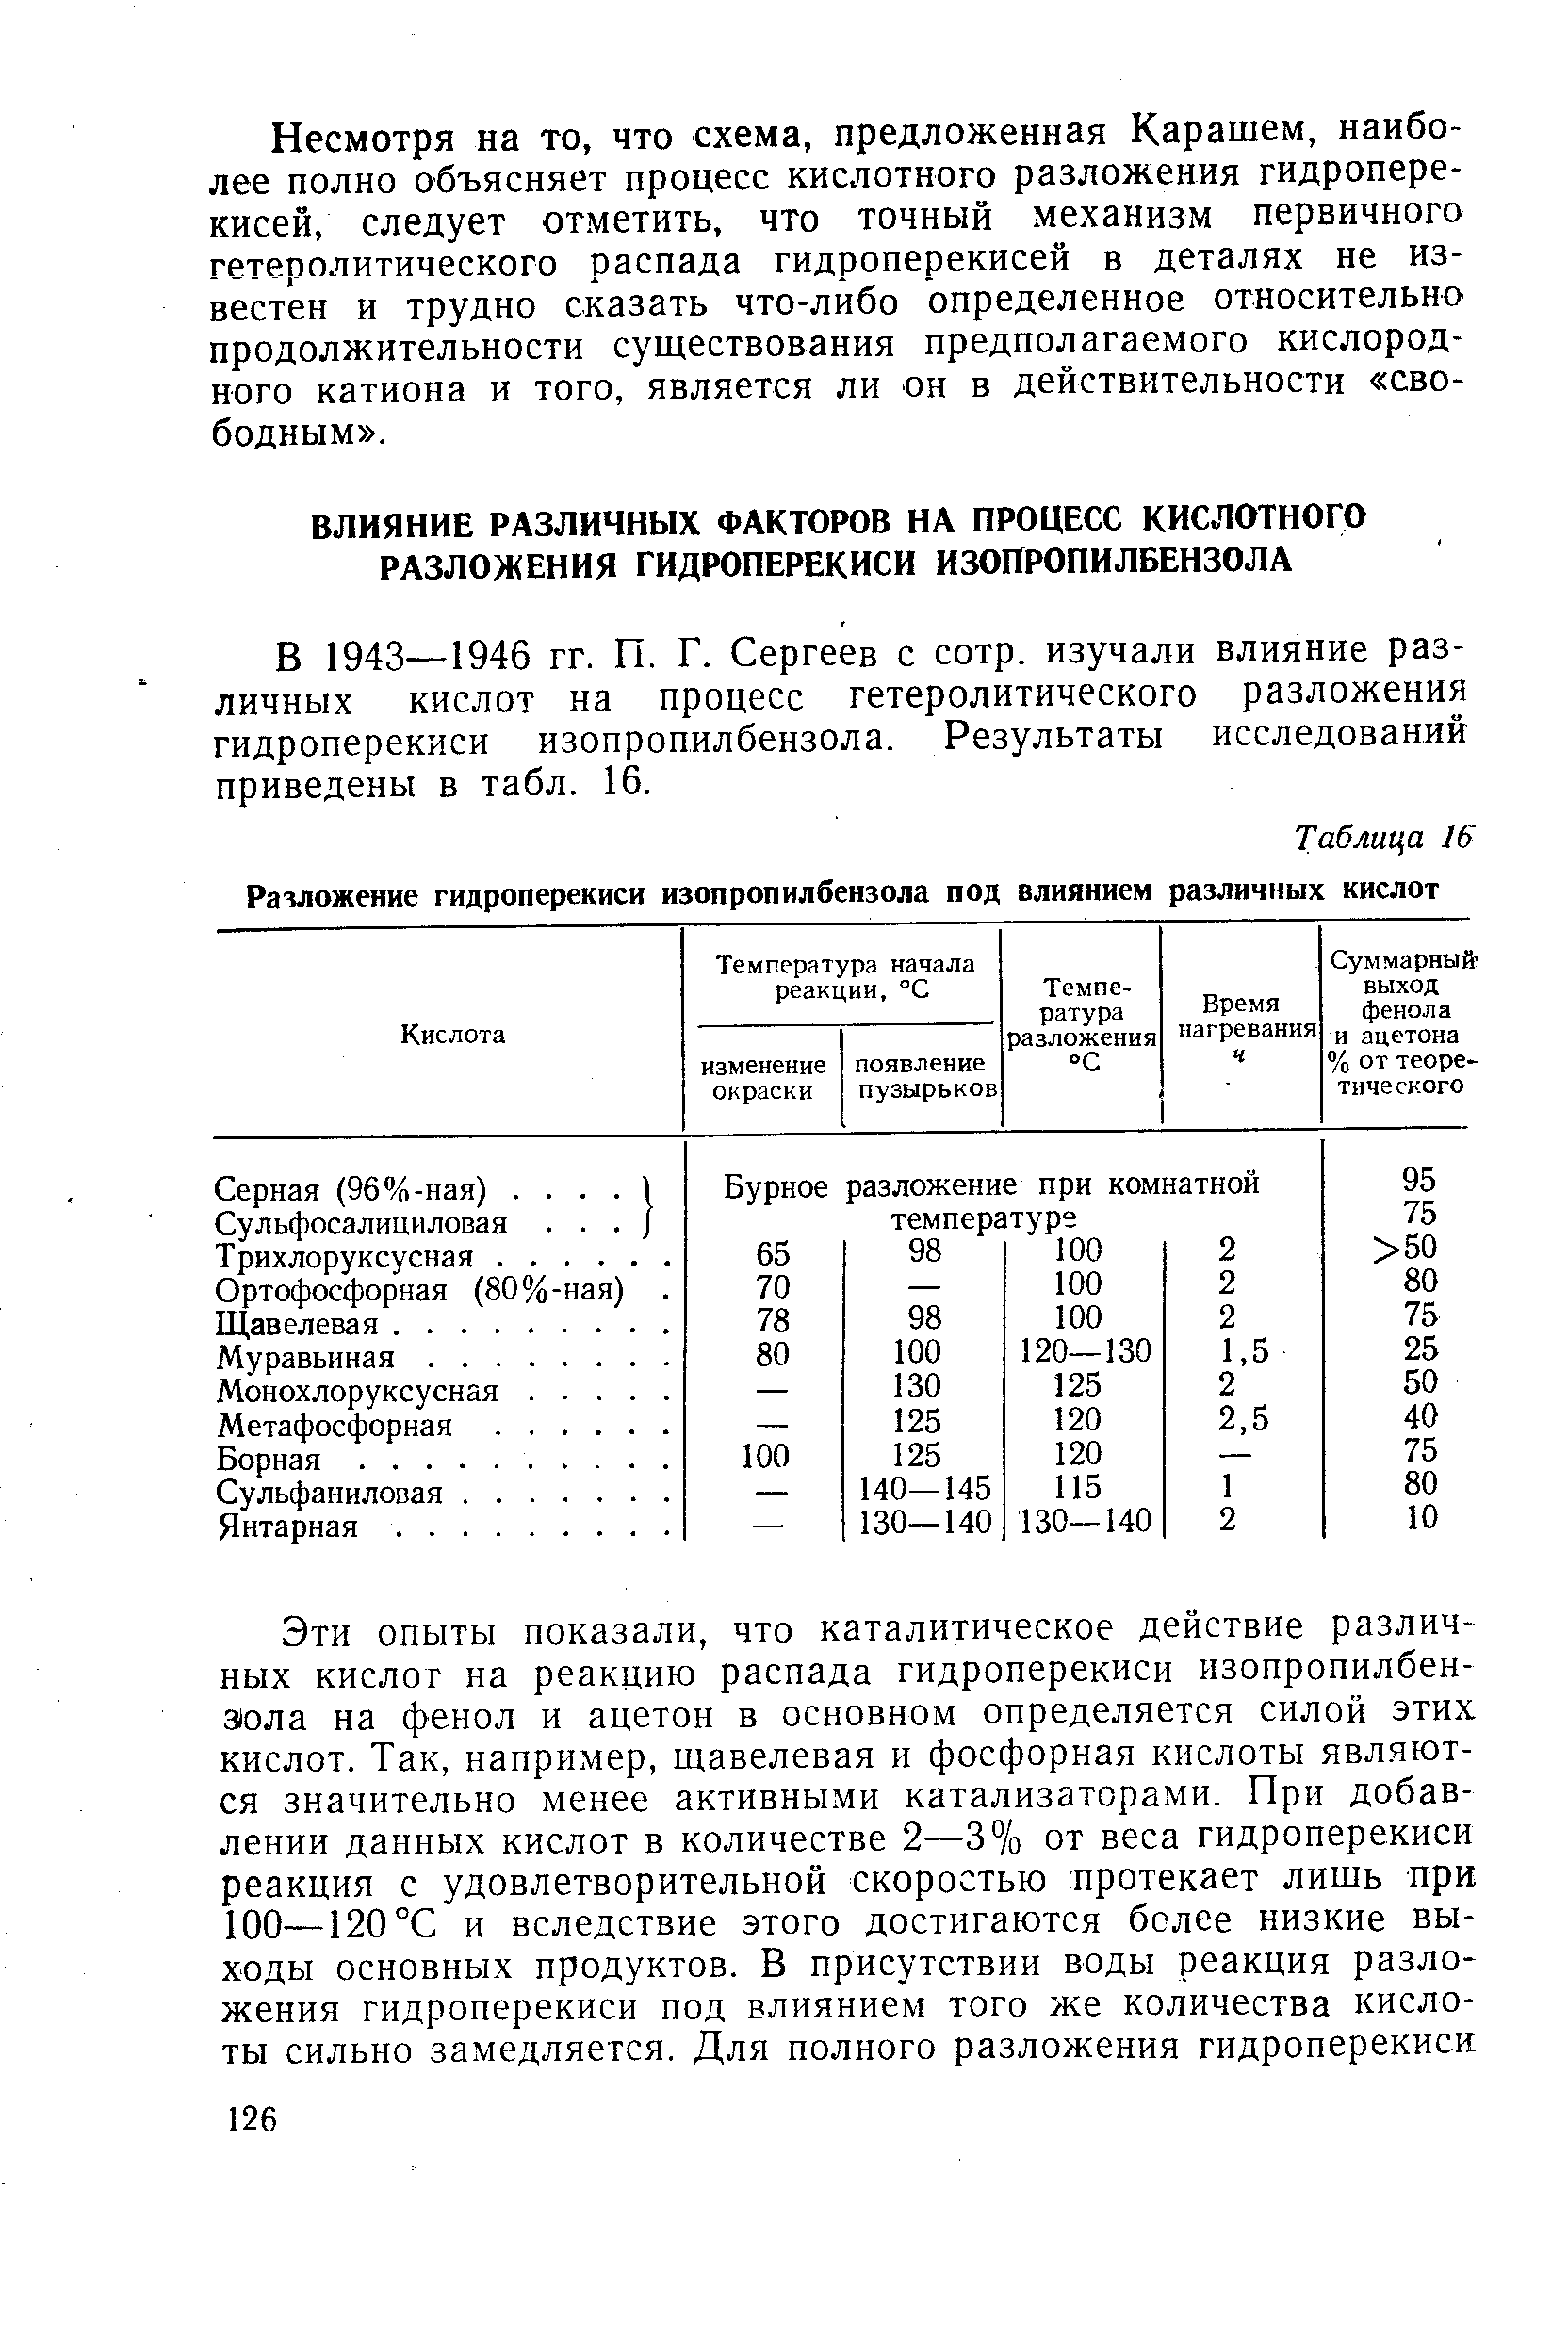 В 1943—1946 гг. П. Г. Сергеев с сотр. изучали влияние различных кислот на процесс гетеролитического разложения гидроперекиси изопропилбензола. Результаты исследований приведены в табл. 16.